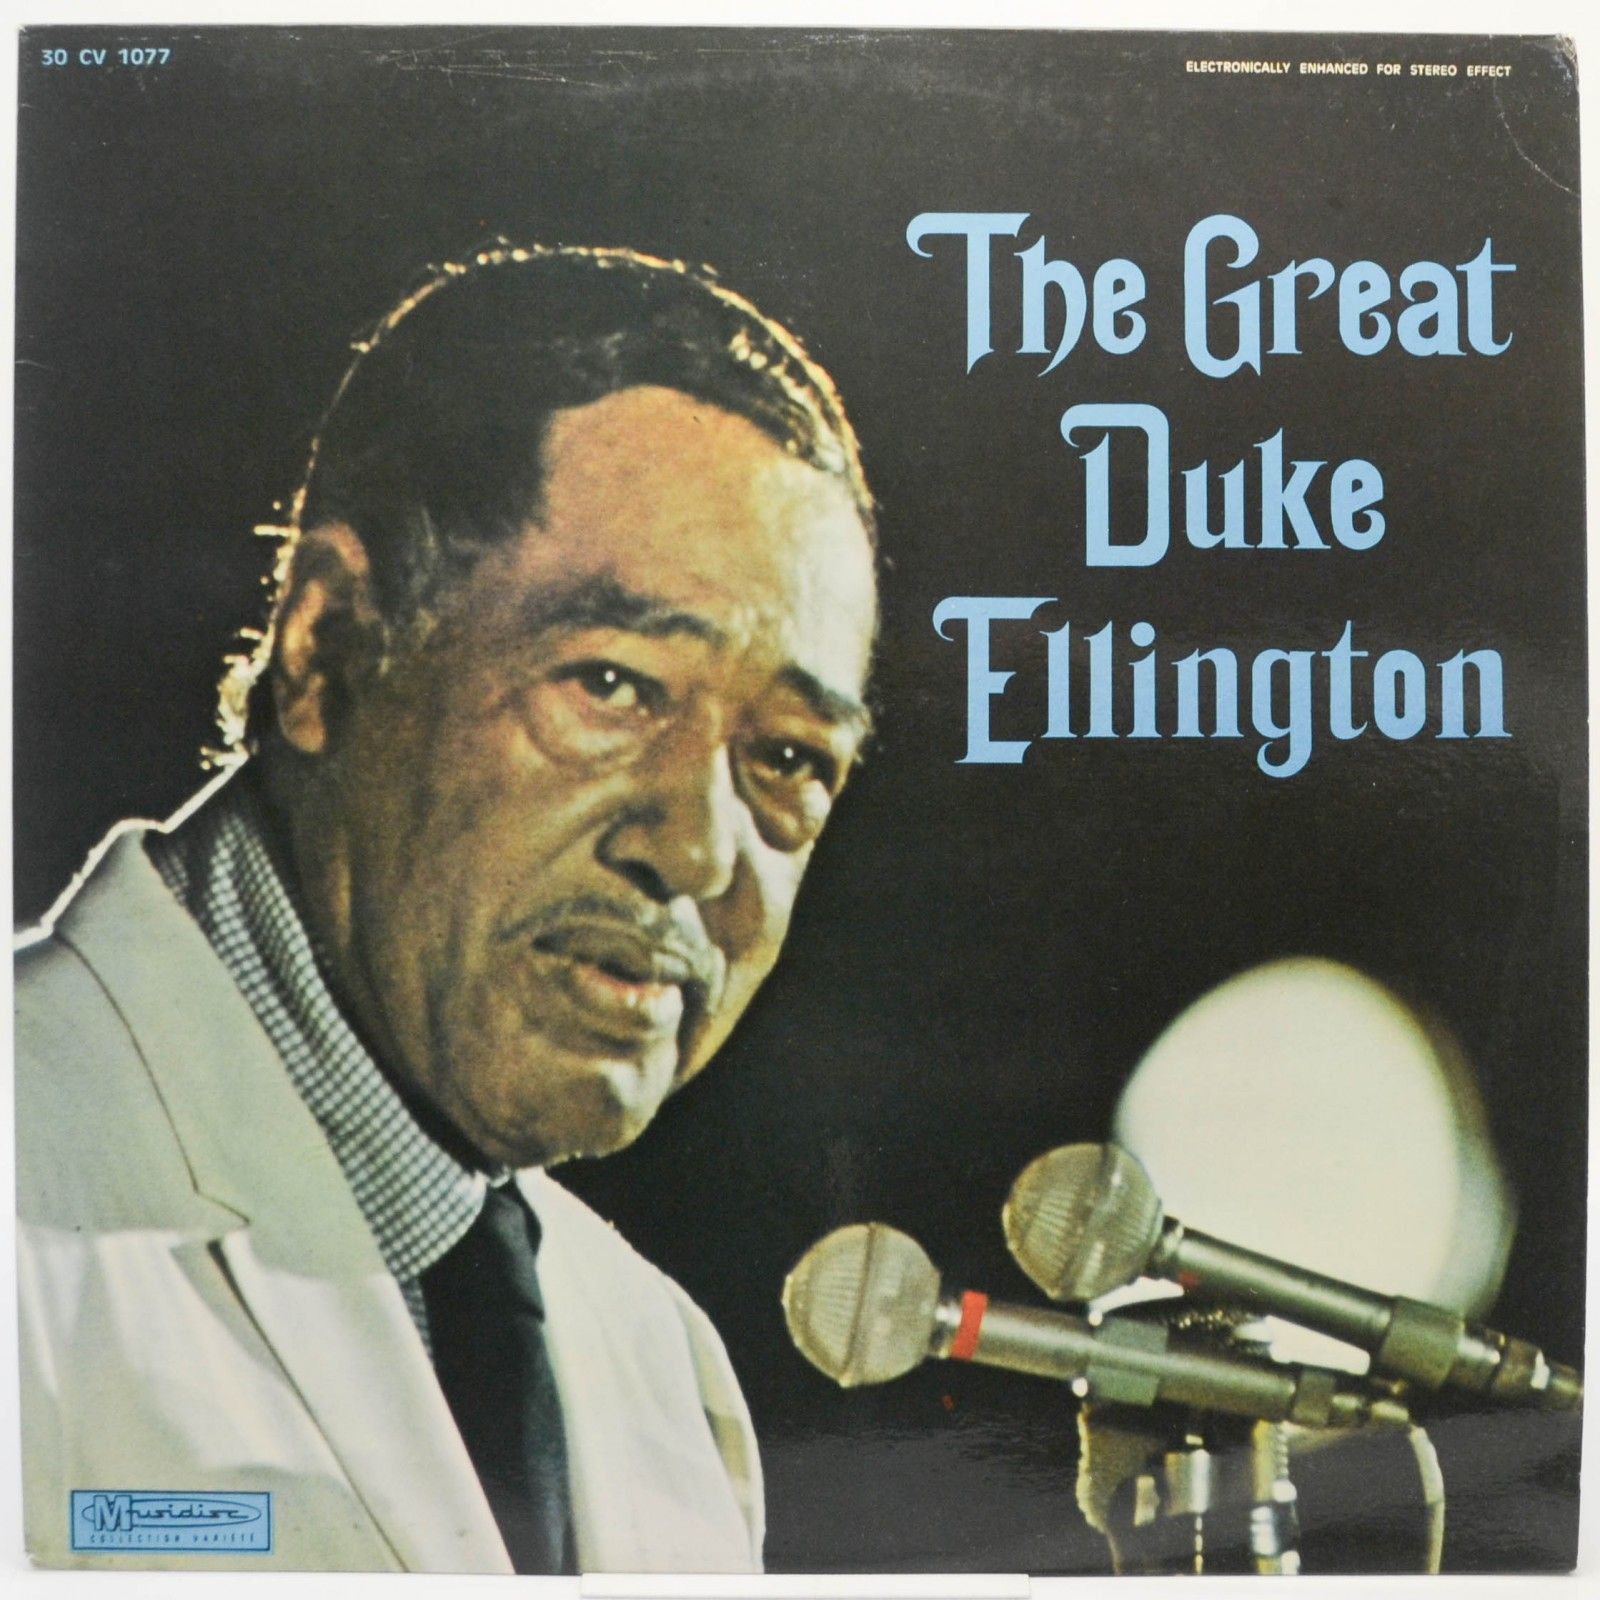 Duke Ellington — The Great Duke Ellington, 1956